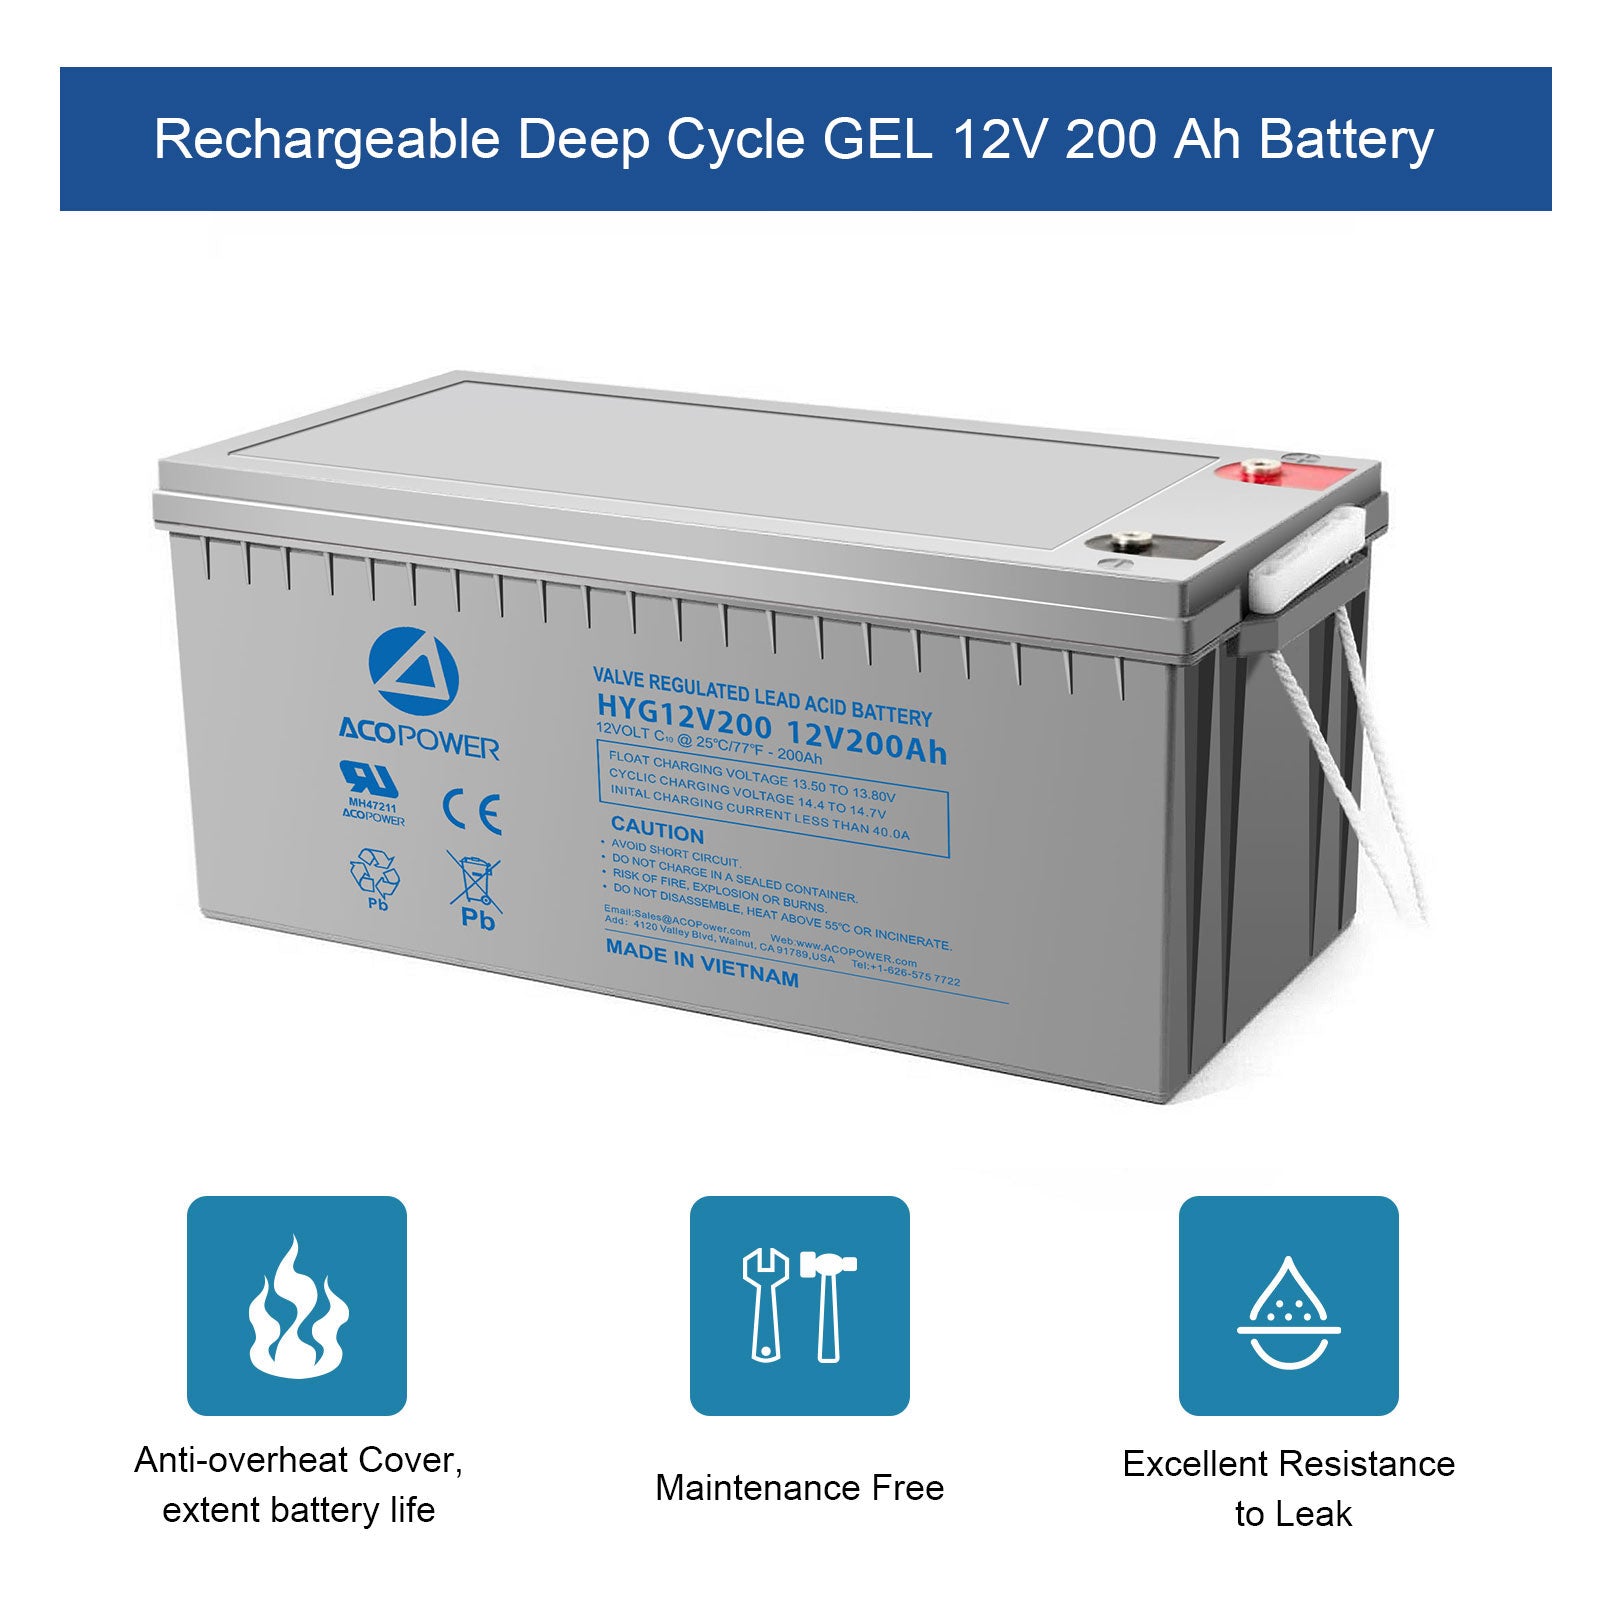 ACOPOWER HYG12-200Ah wiederaufladbare Gel Deep Cycle 12V 200Ah Batterie